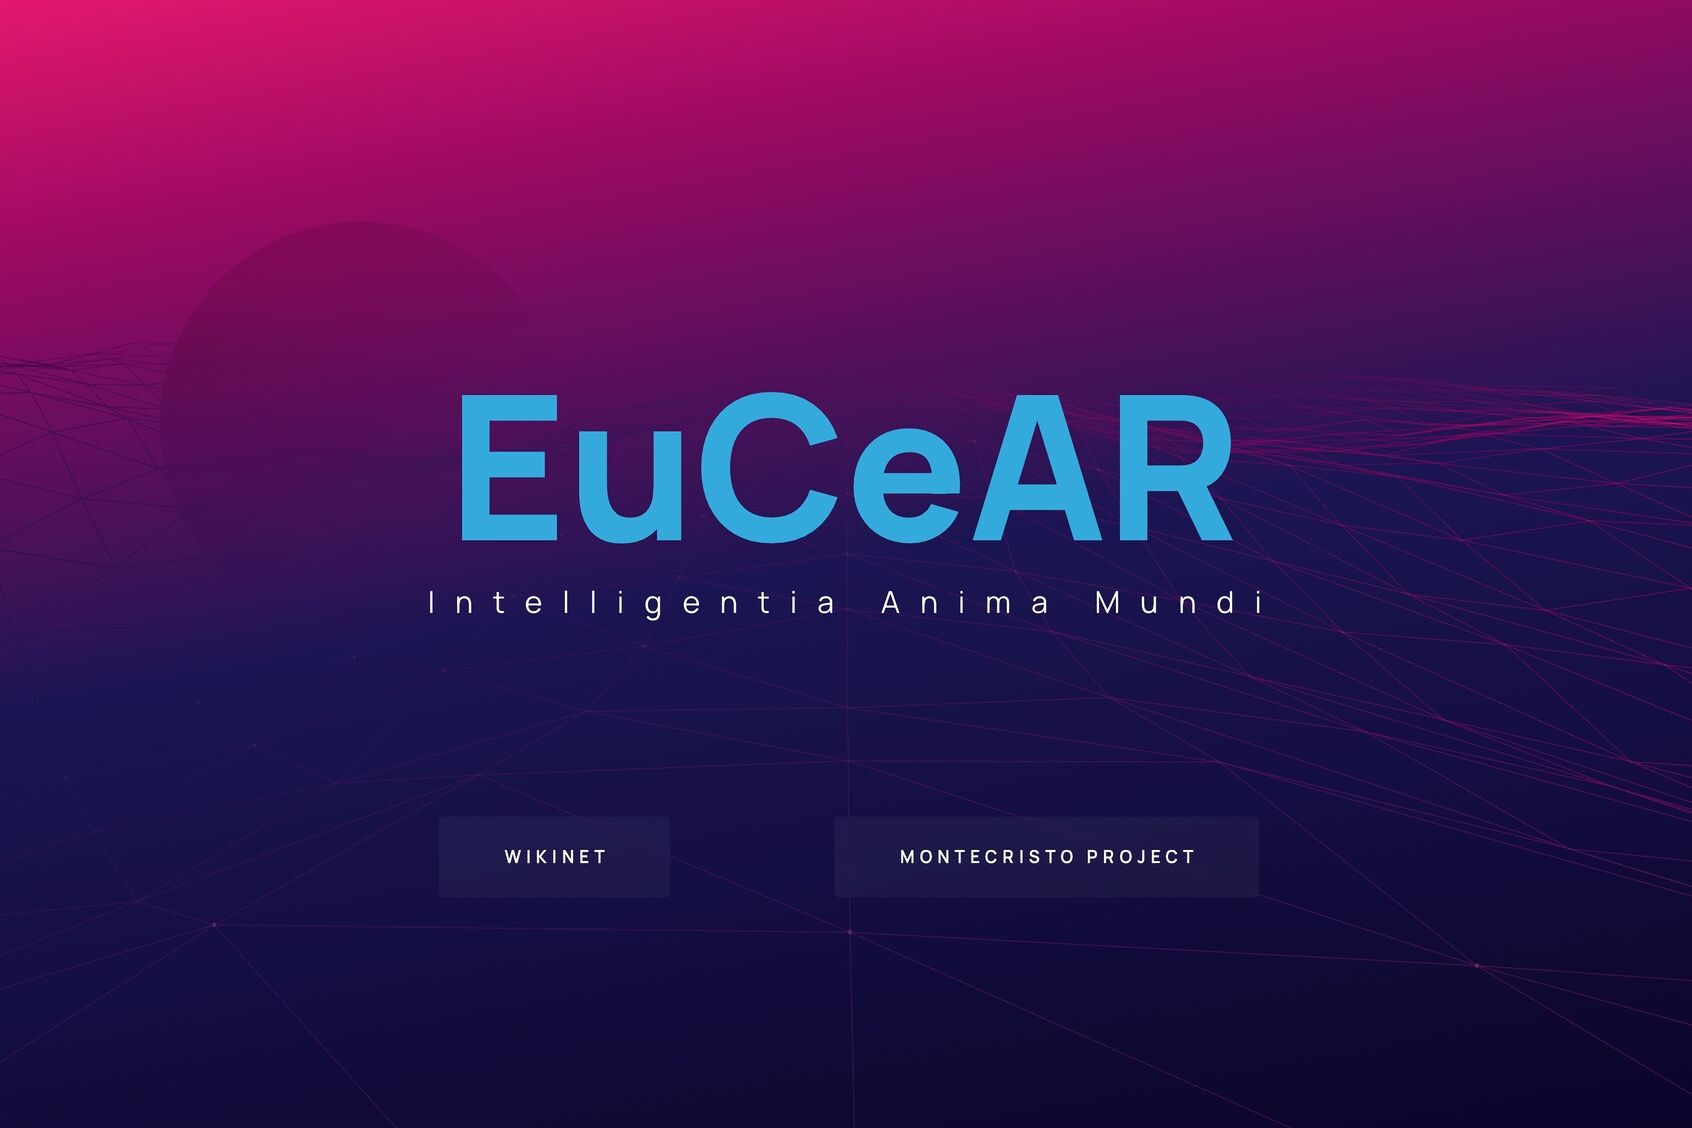 혁신적인 문헌: Edoardo Volpi Kellermann이 만든 "EuCEAR"로 약칭되는 "유럽 첨단 연구 센터"의 랜딩 페이지